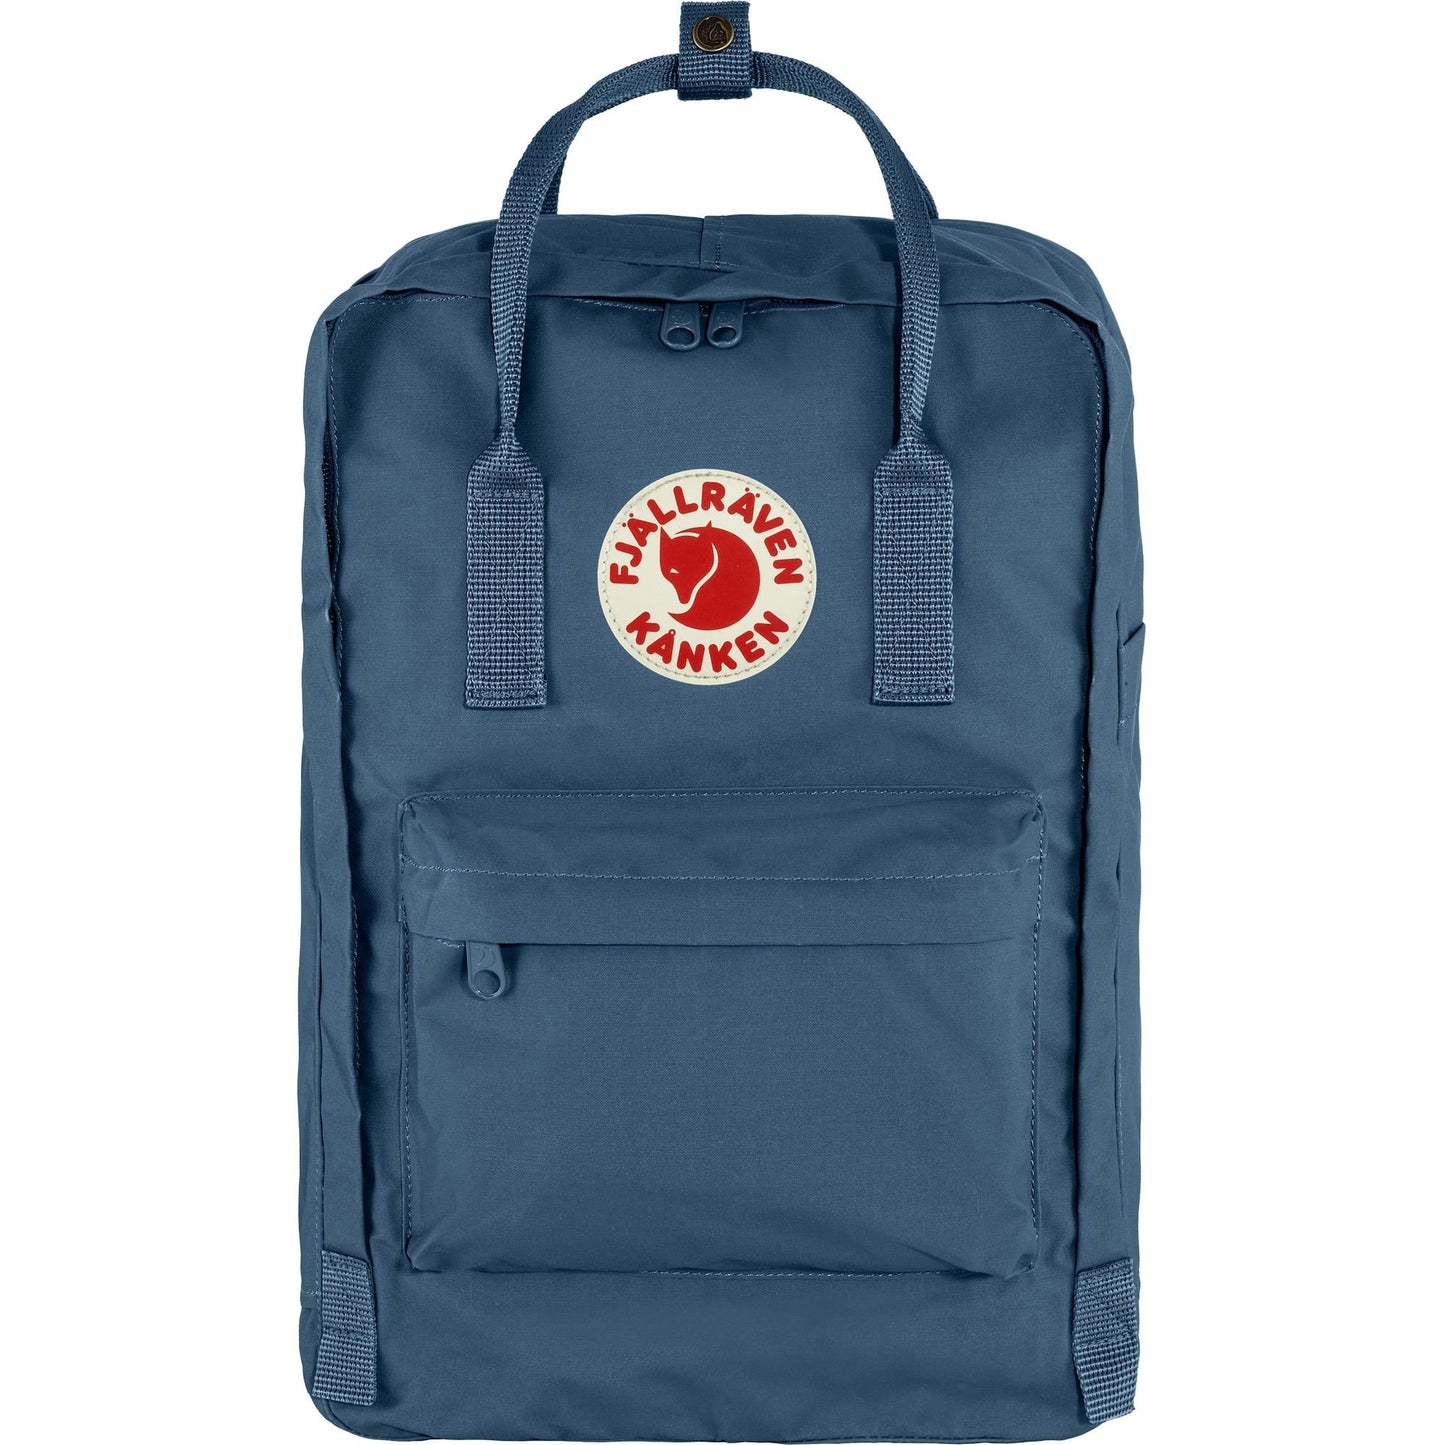 Dusty blue mini backpack